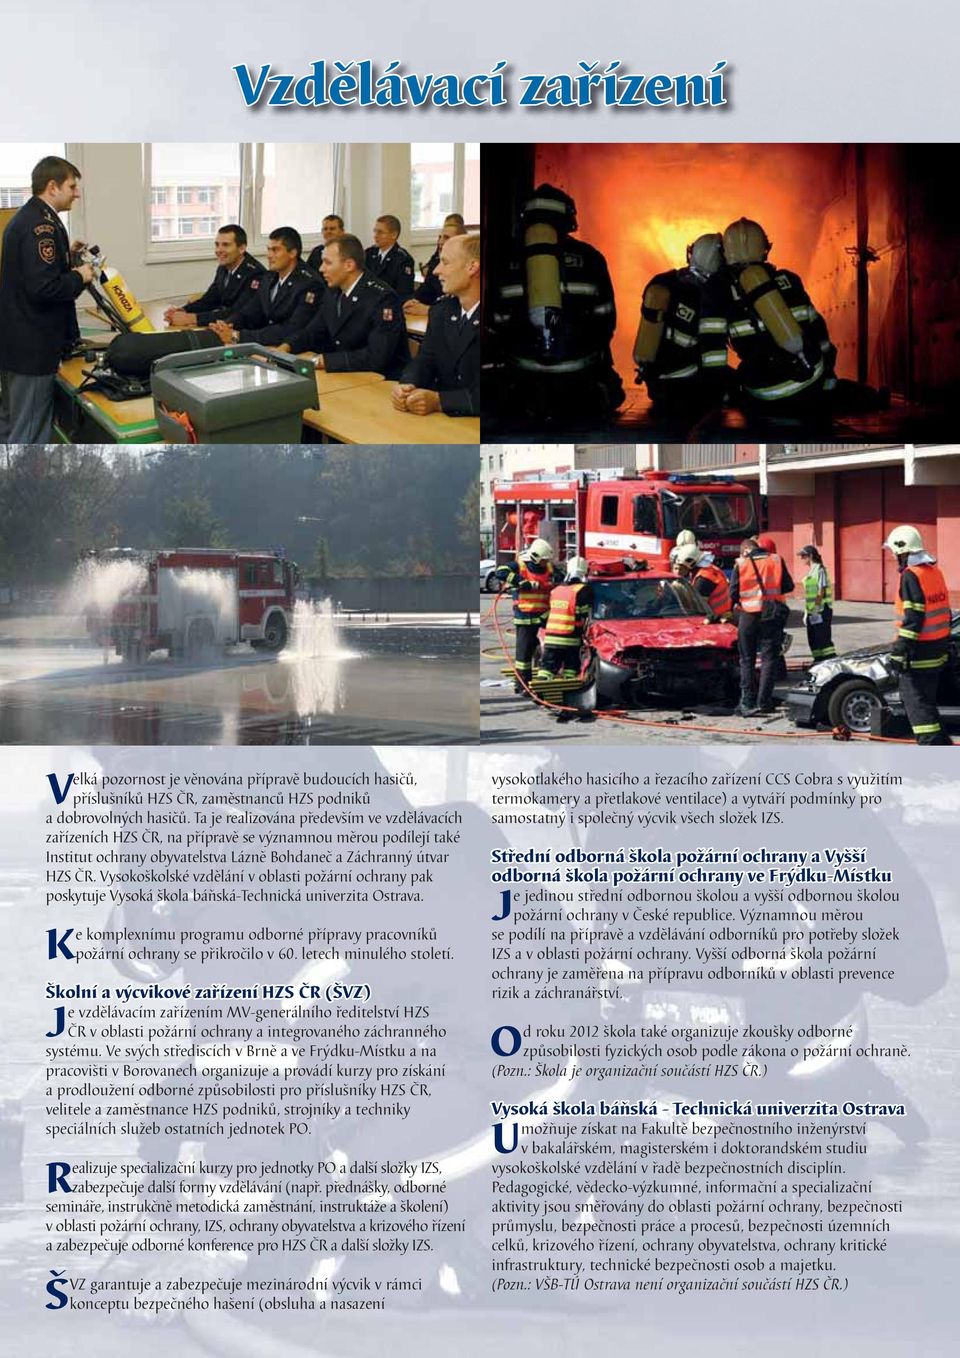 Vysokoškolské vzdělání v oblasti požární ochrany pak poskytuje Vysoká škola báňská-technická univerzita Ostrava. Ke komplexnímu programu odborné přípravy pracovníků požární ochrany se přikročilo v 60.